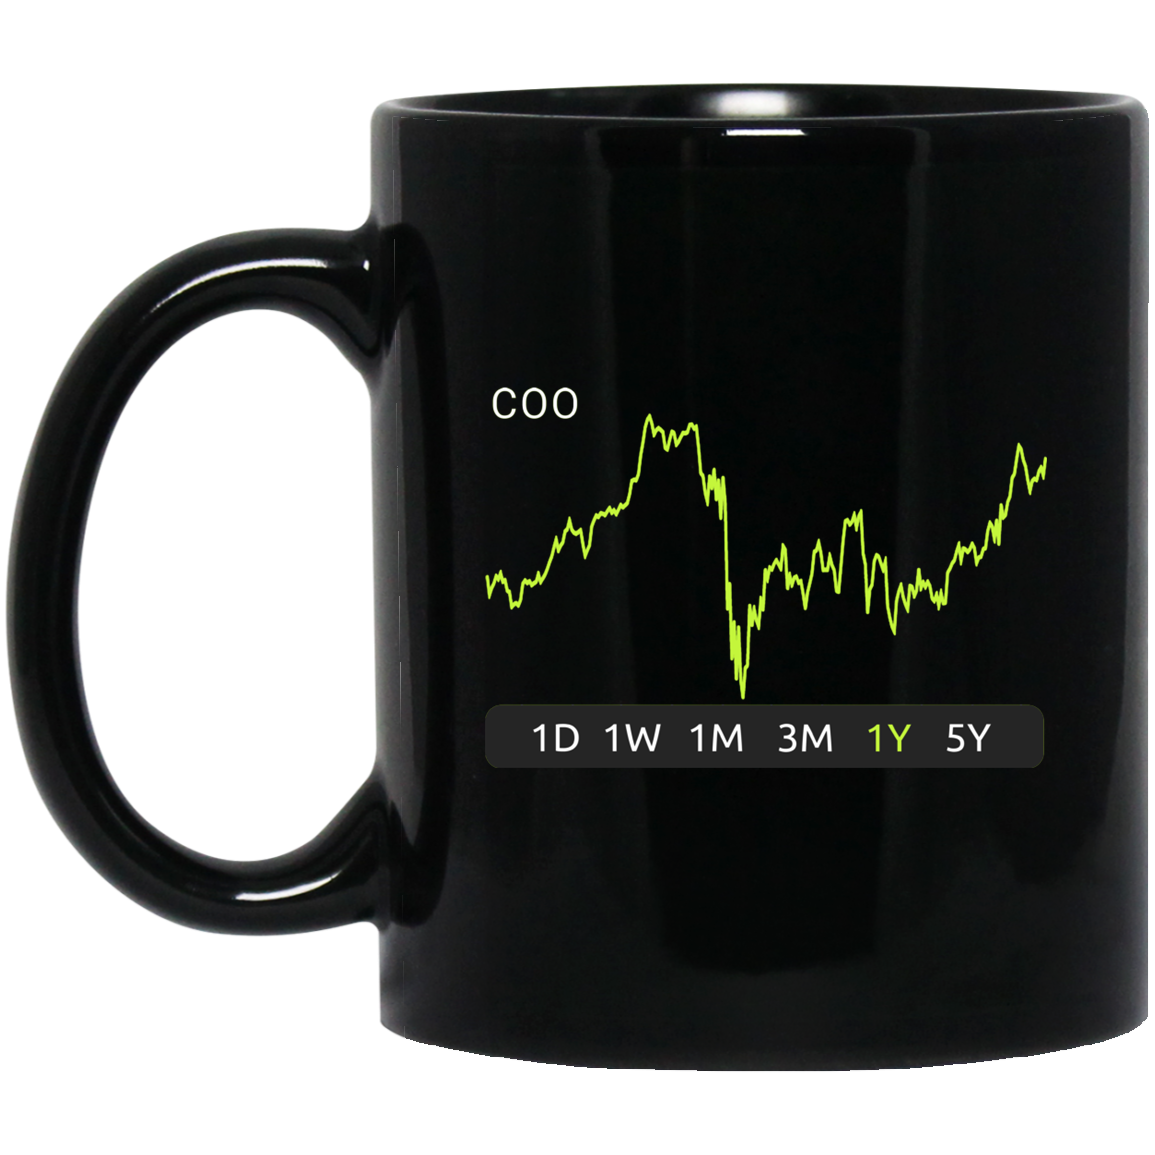 COO Stock 1y Mug